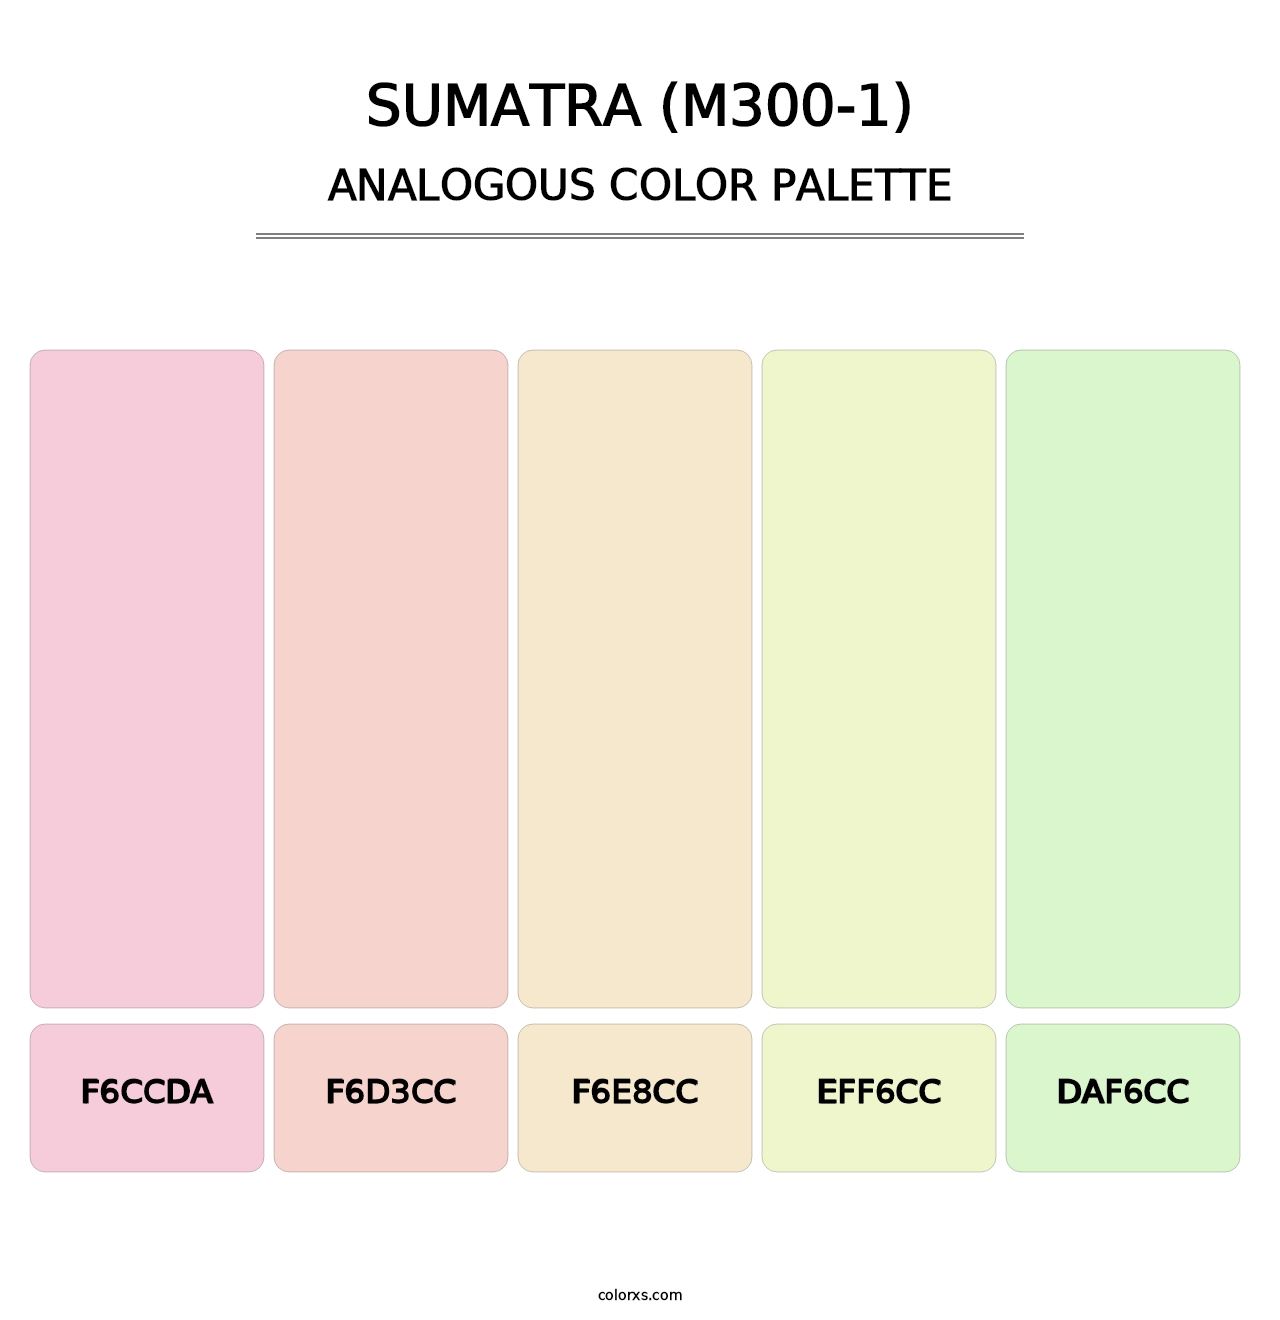 Sumatra (M300-1) - Analogous Color Palette